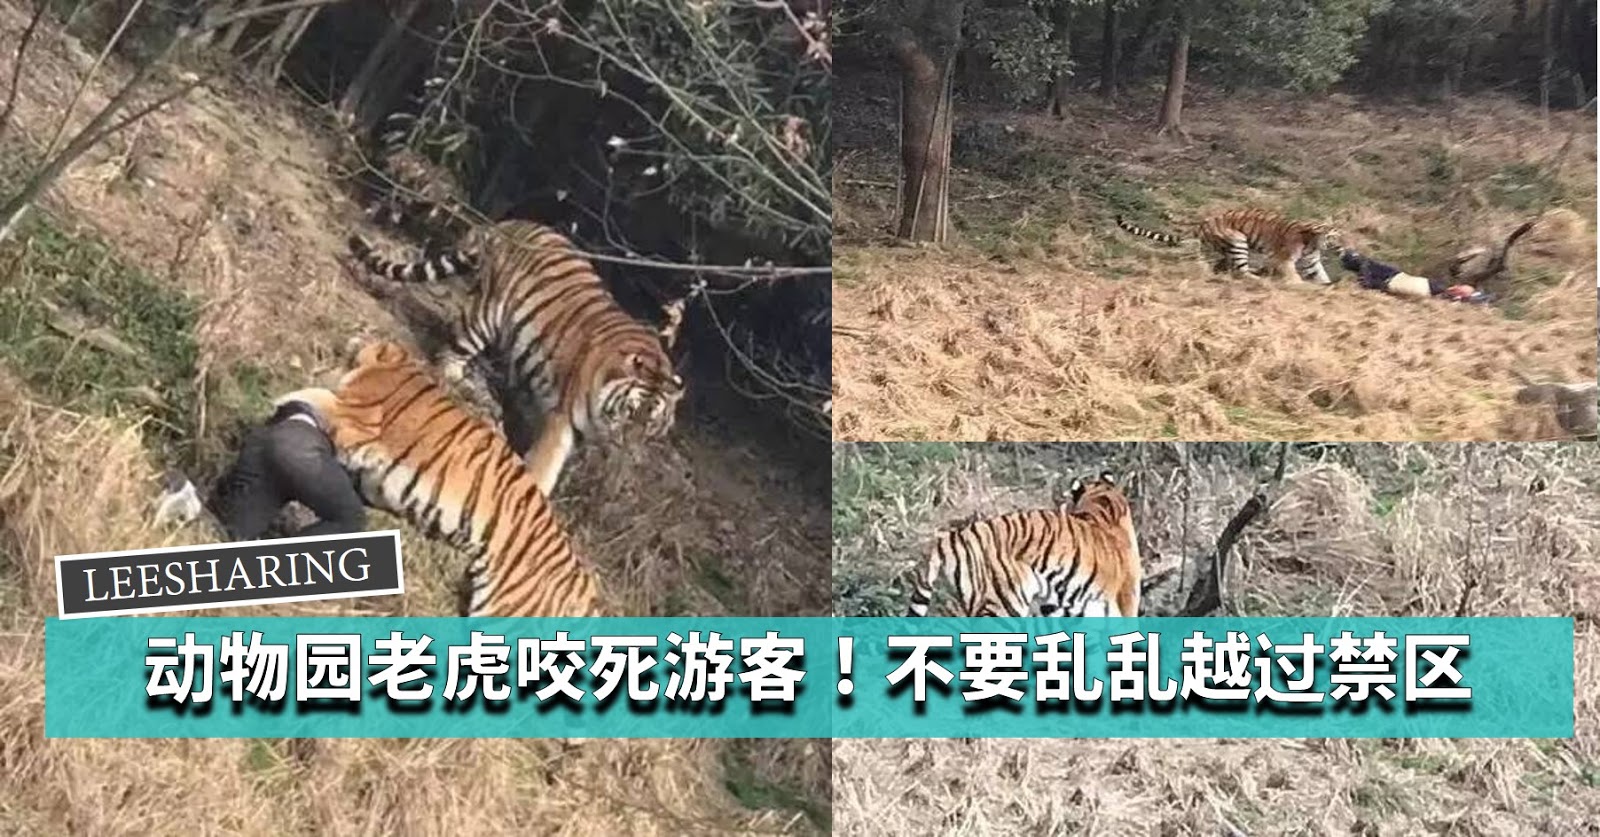 深圳野生动物园老虎“虎虎生威”迎虎年_读特新闻客户端